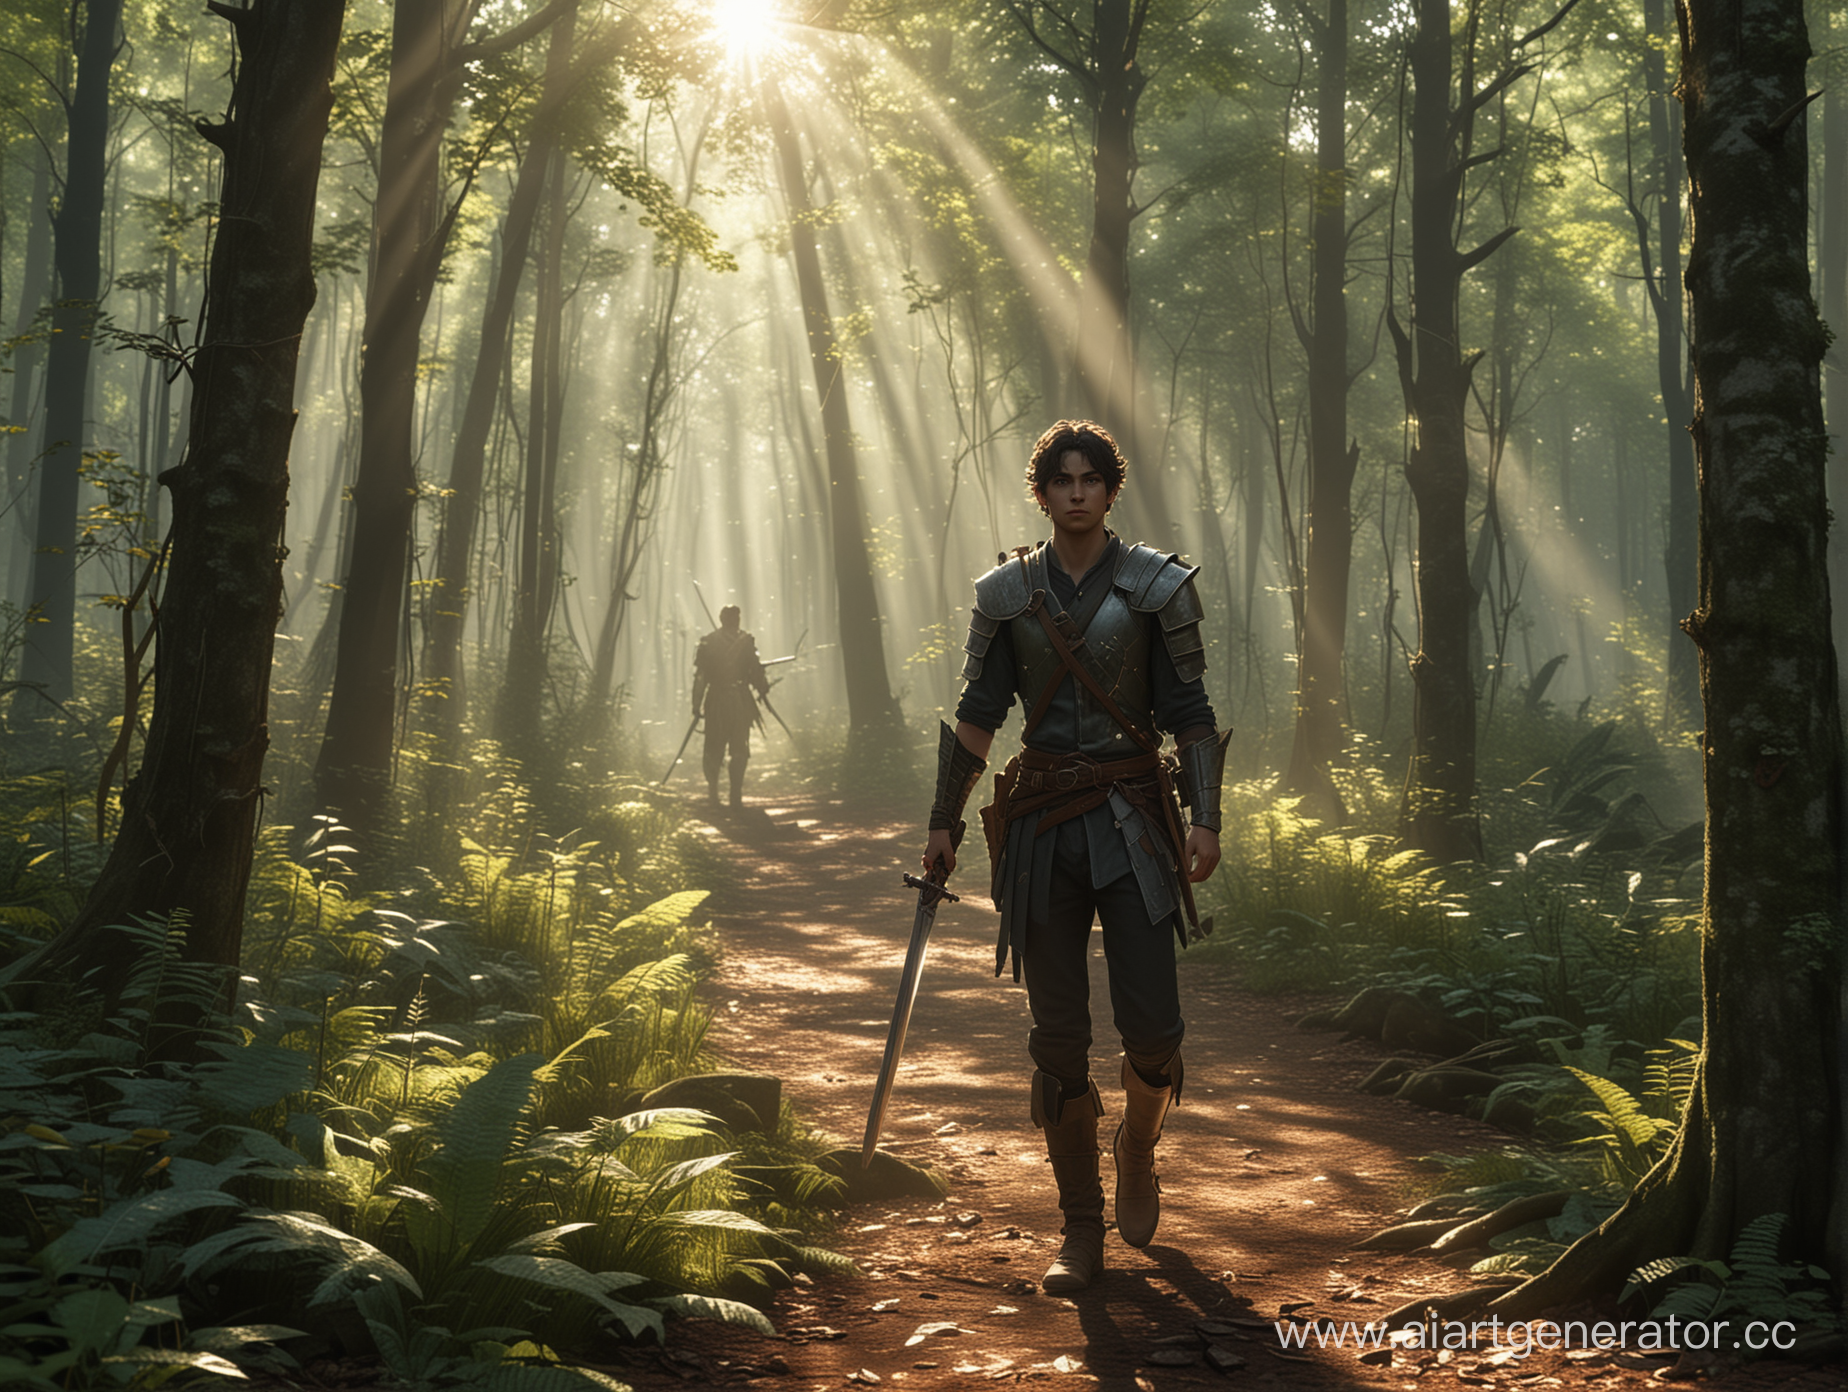 Главный герой - молодой человек, идет среди густых деревьев в лесу, держа в руках меч. За ним стоят несколько НПС - разнообразные воины, которые идут вместе с ним. Солнечные лучи проникают сквозь листву, создавая игривые блики на земле.